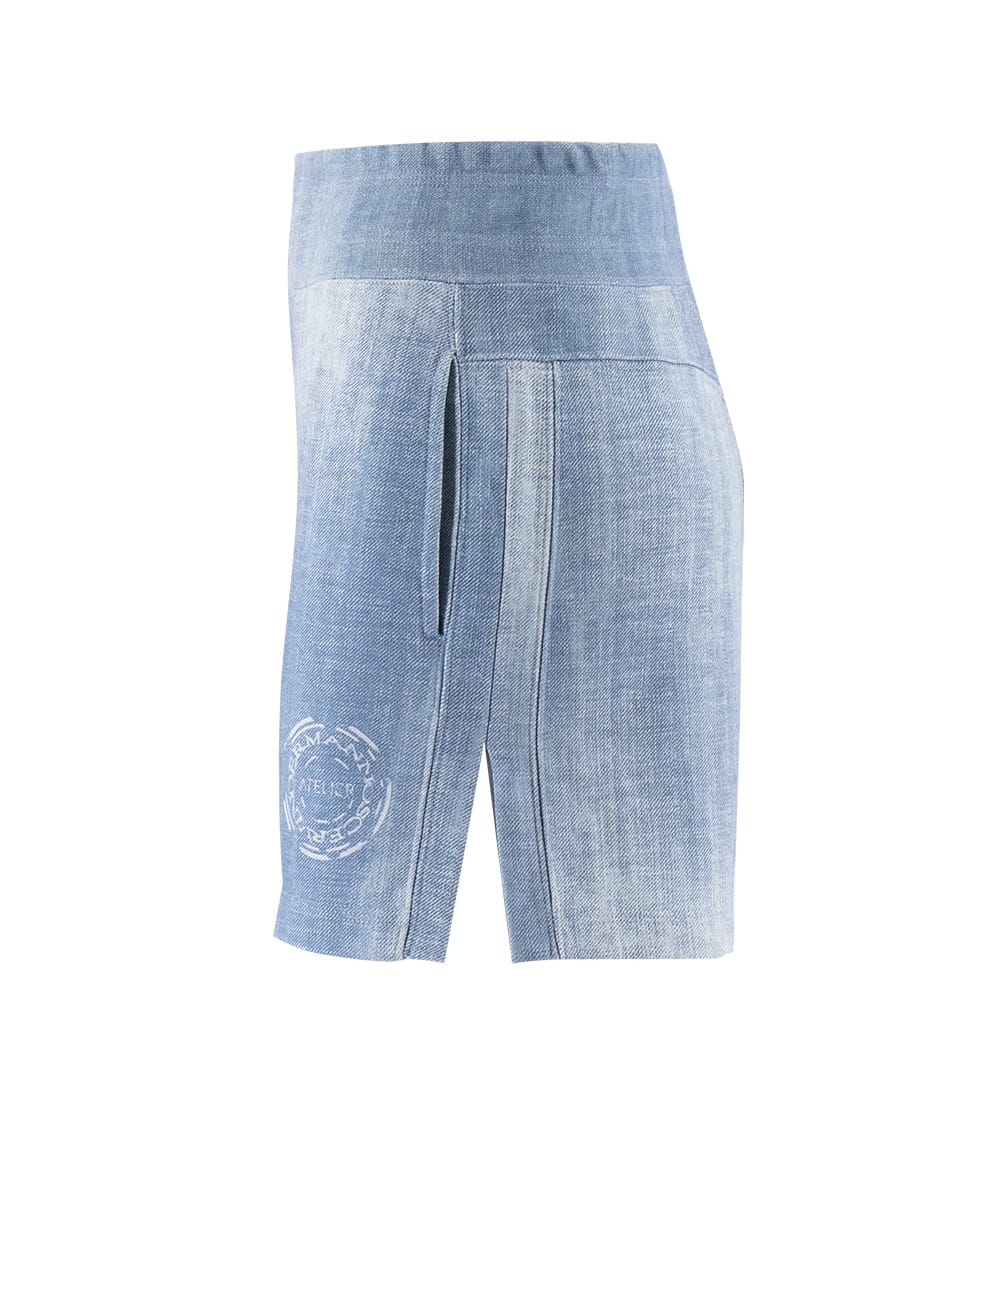 Shop Ermanno Scervino Shorts In Light Jeans